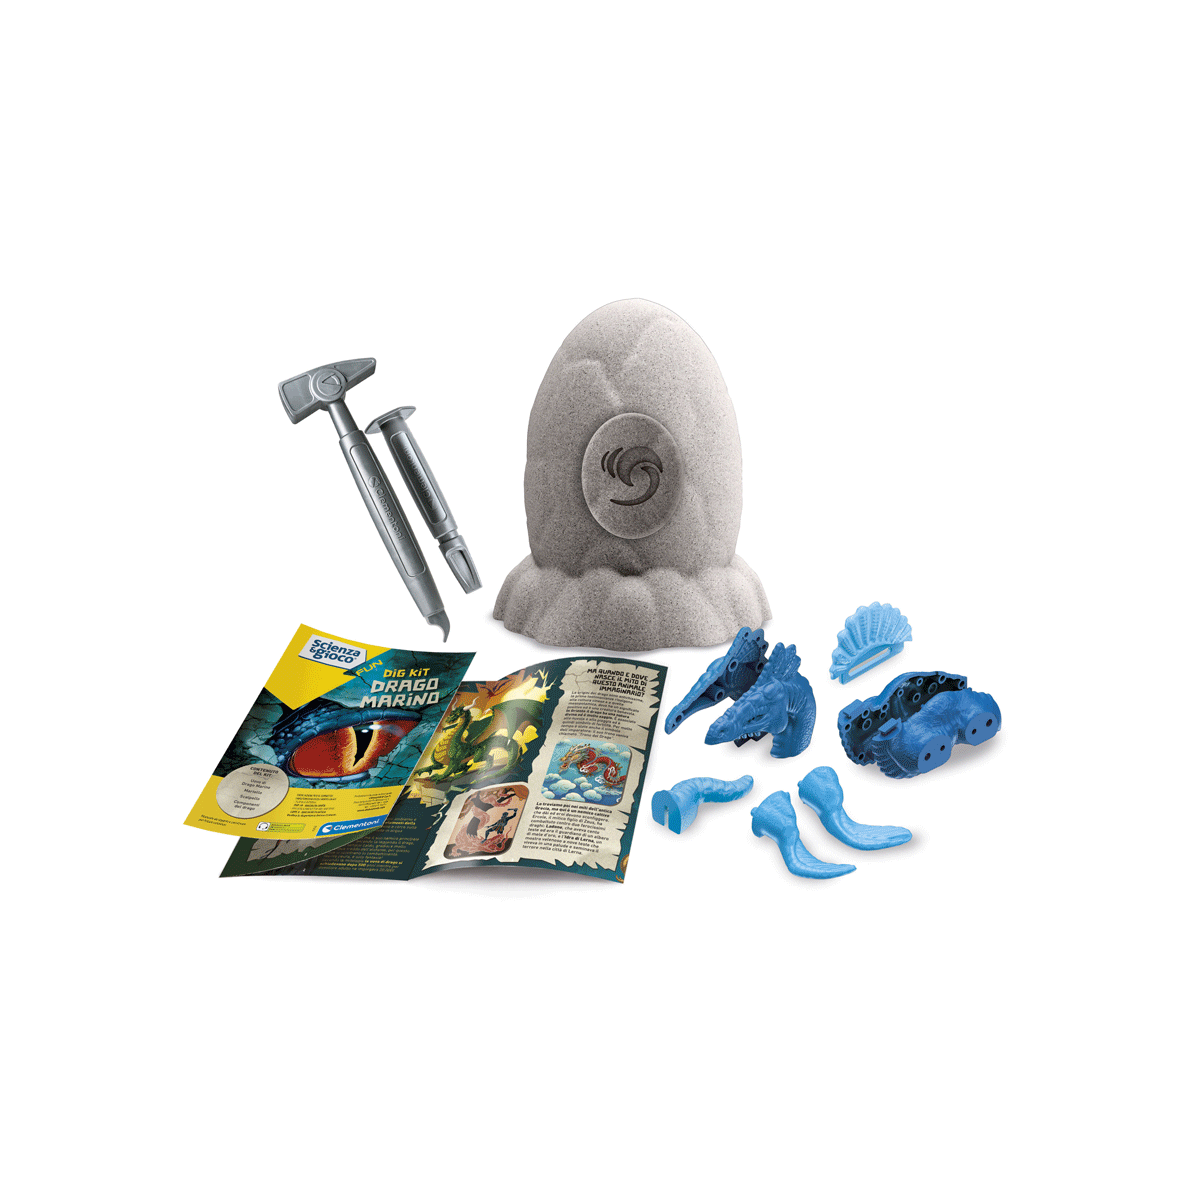 Clementoni - scienza e gioco fun - dig kit drago marino, gioco scientifico - Scienza e Gioco